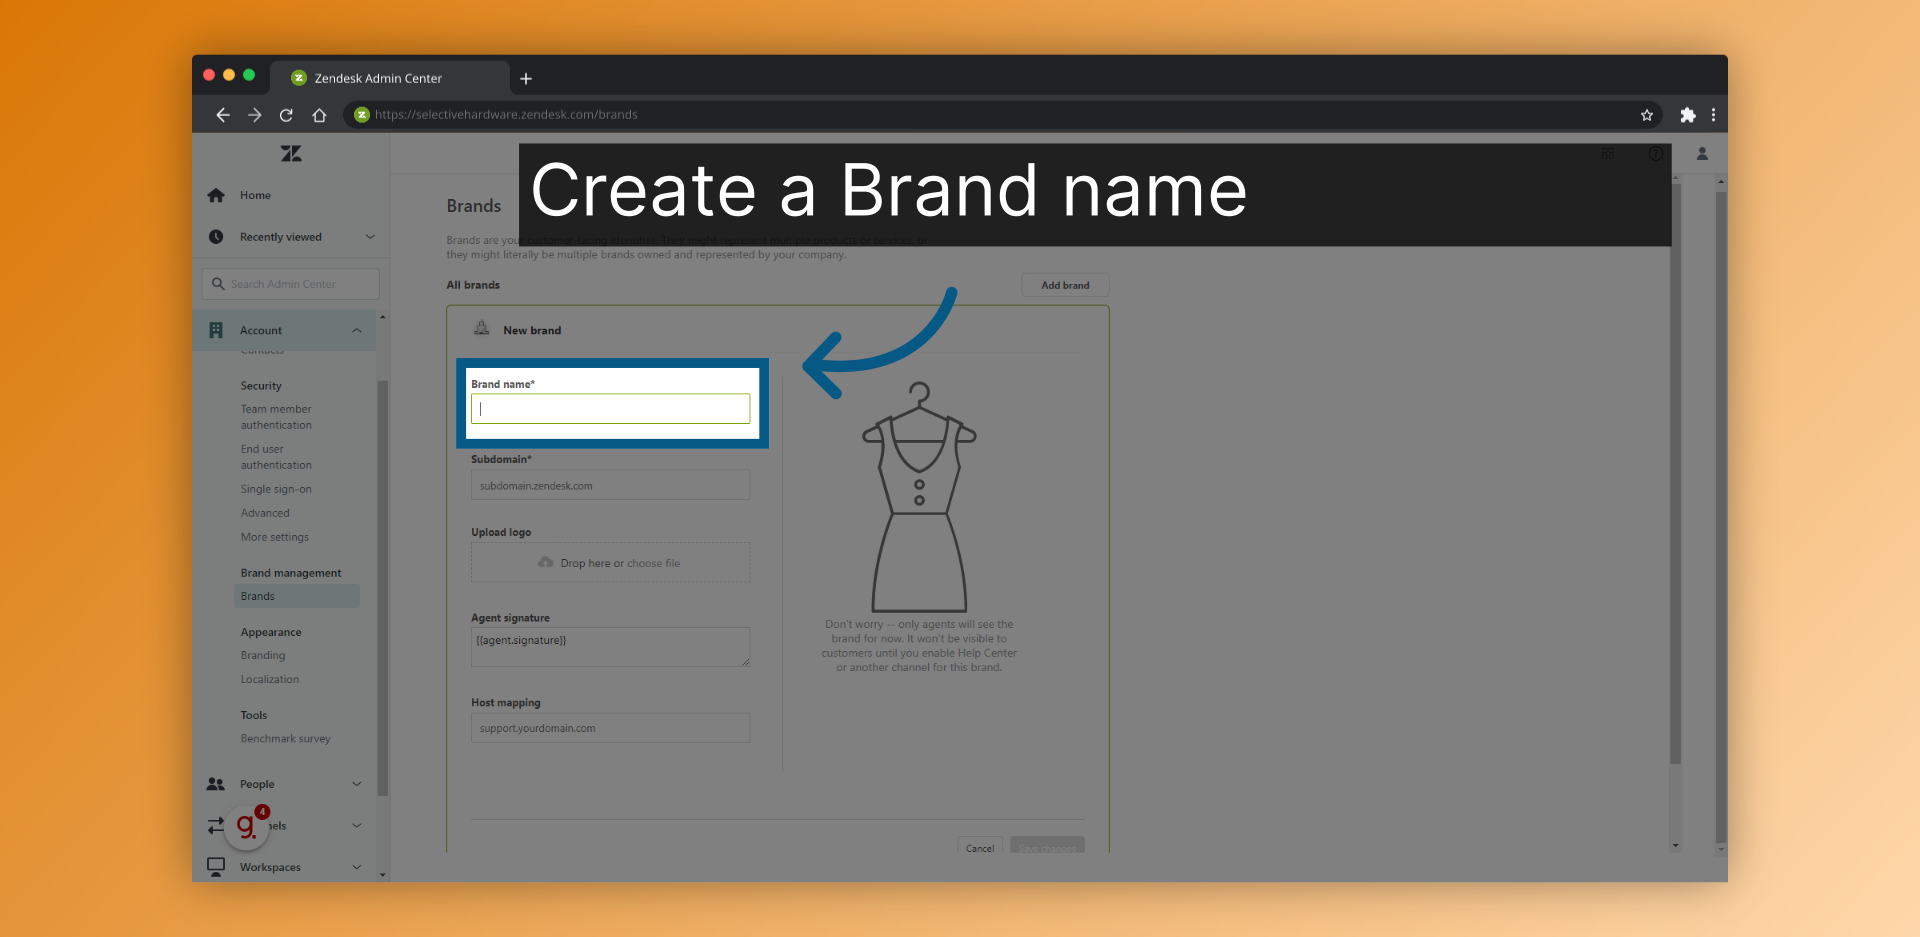 Create a Brand name